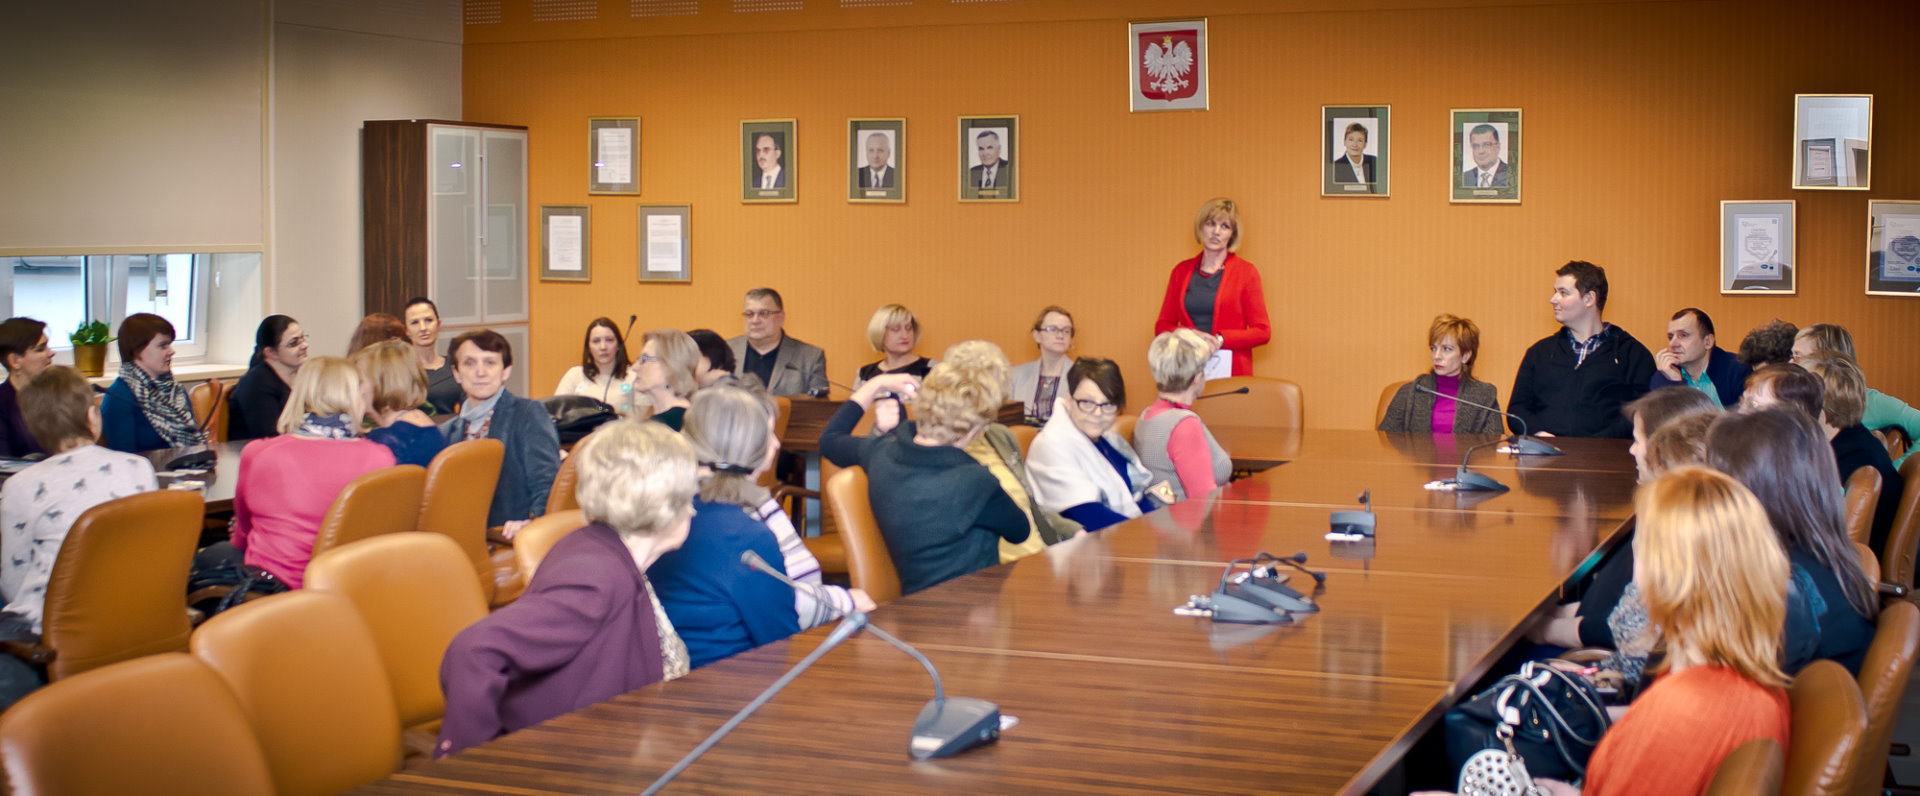 Grupa ludzi siedząca przy stołach ustawionych w kształt podkowy, na stołach stoją mikrofony, w tle ściana udekorowana godłem Polski oraz portretami ludzi.